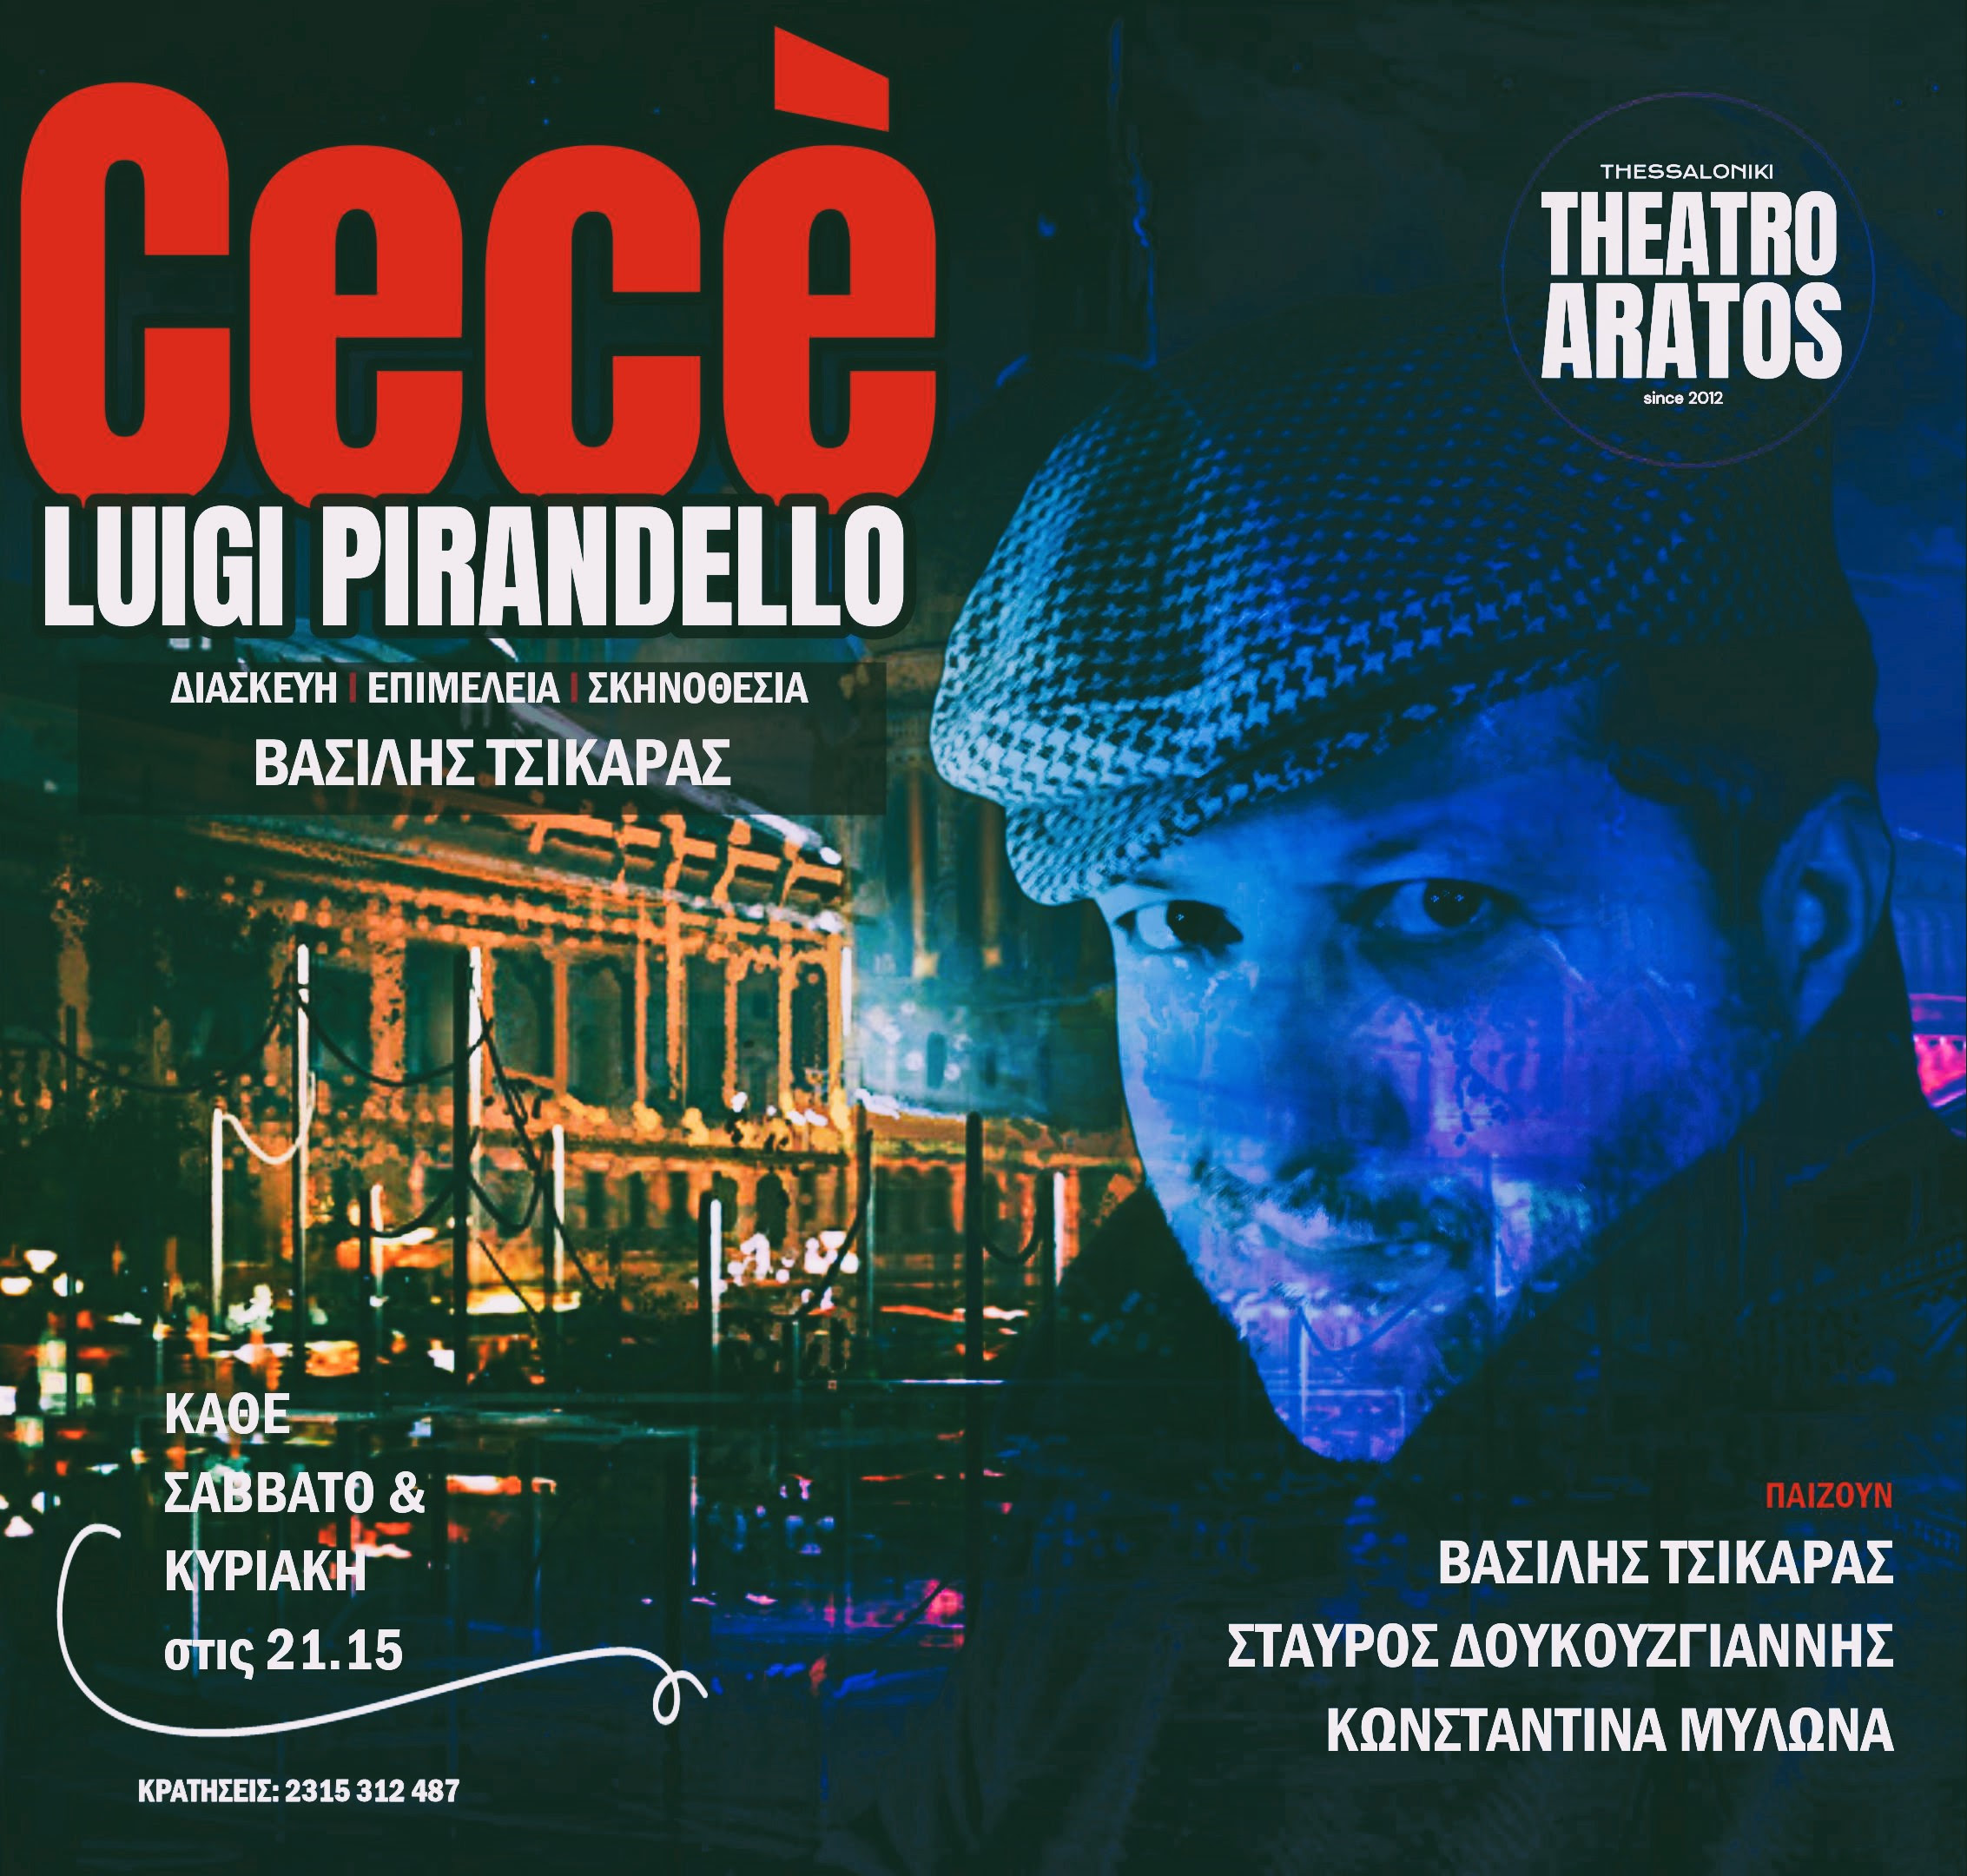 Θεσσαλονίκη: “Cecè” του Λουίτζι Πιραντέλλο στο Θέατρο Άρατος